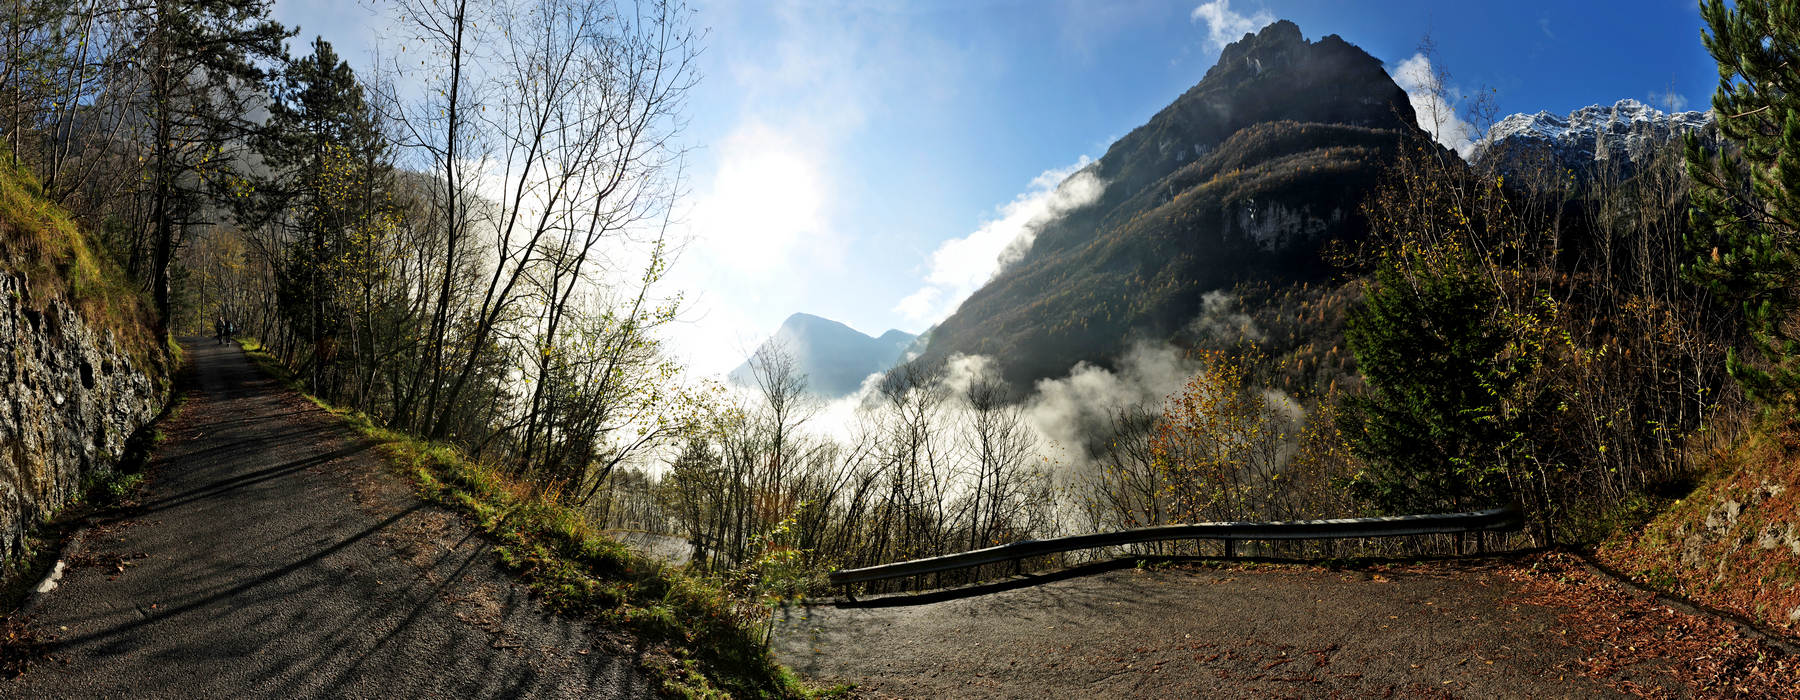 Le Gene nella Valle del Mis, Parco Nazionale Dolomiti Bellunesi